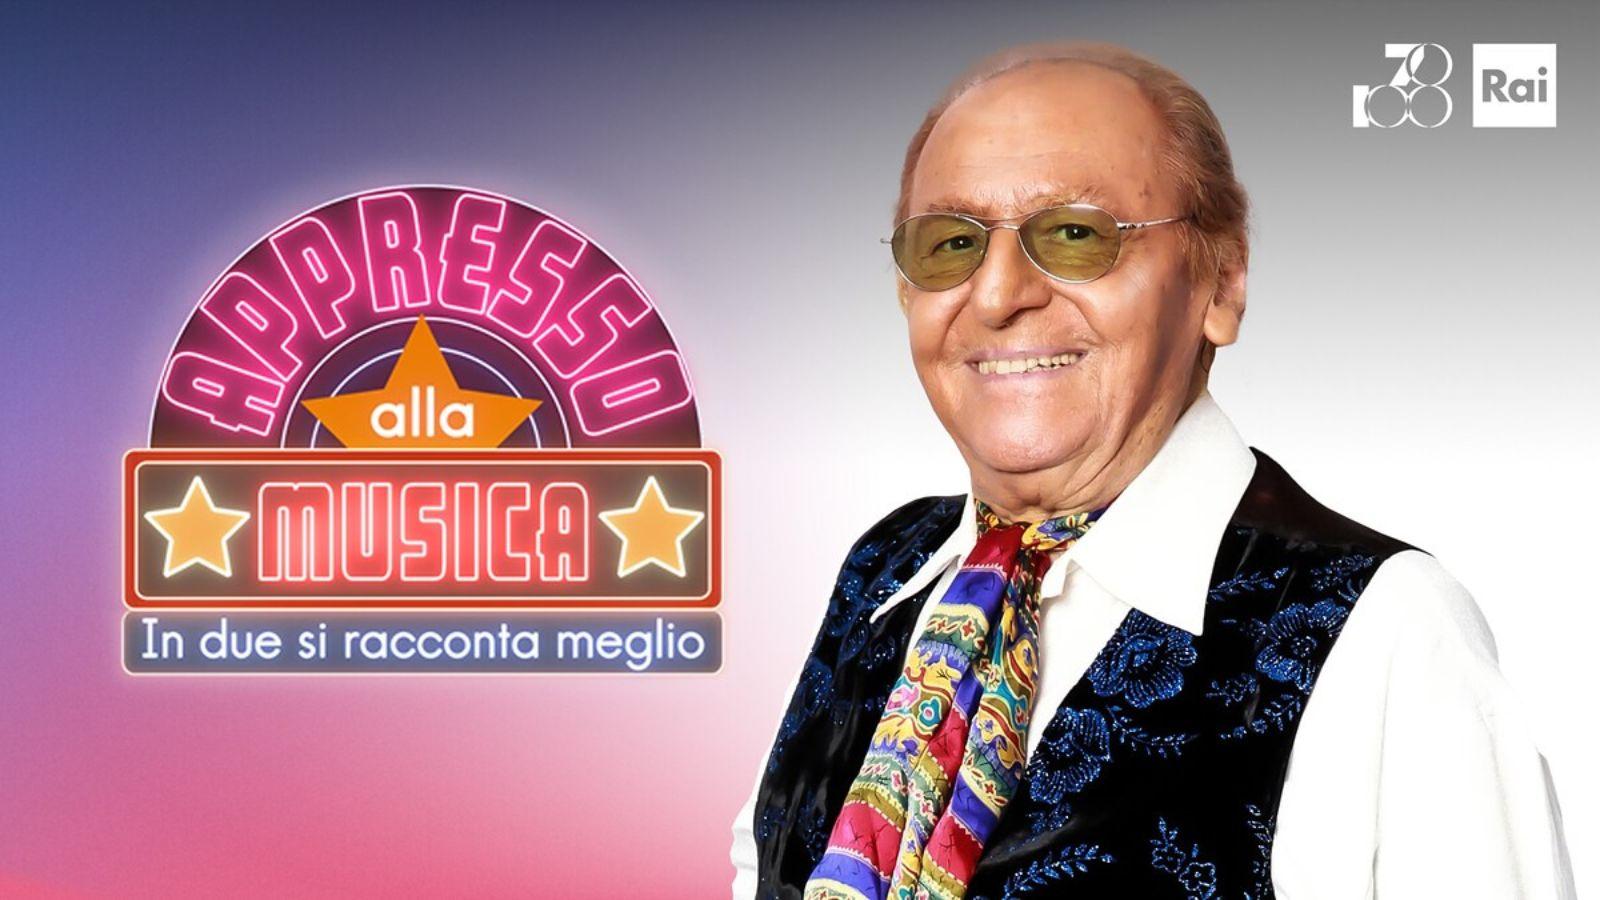 Claudio Baglioni - Radio Margherita